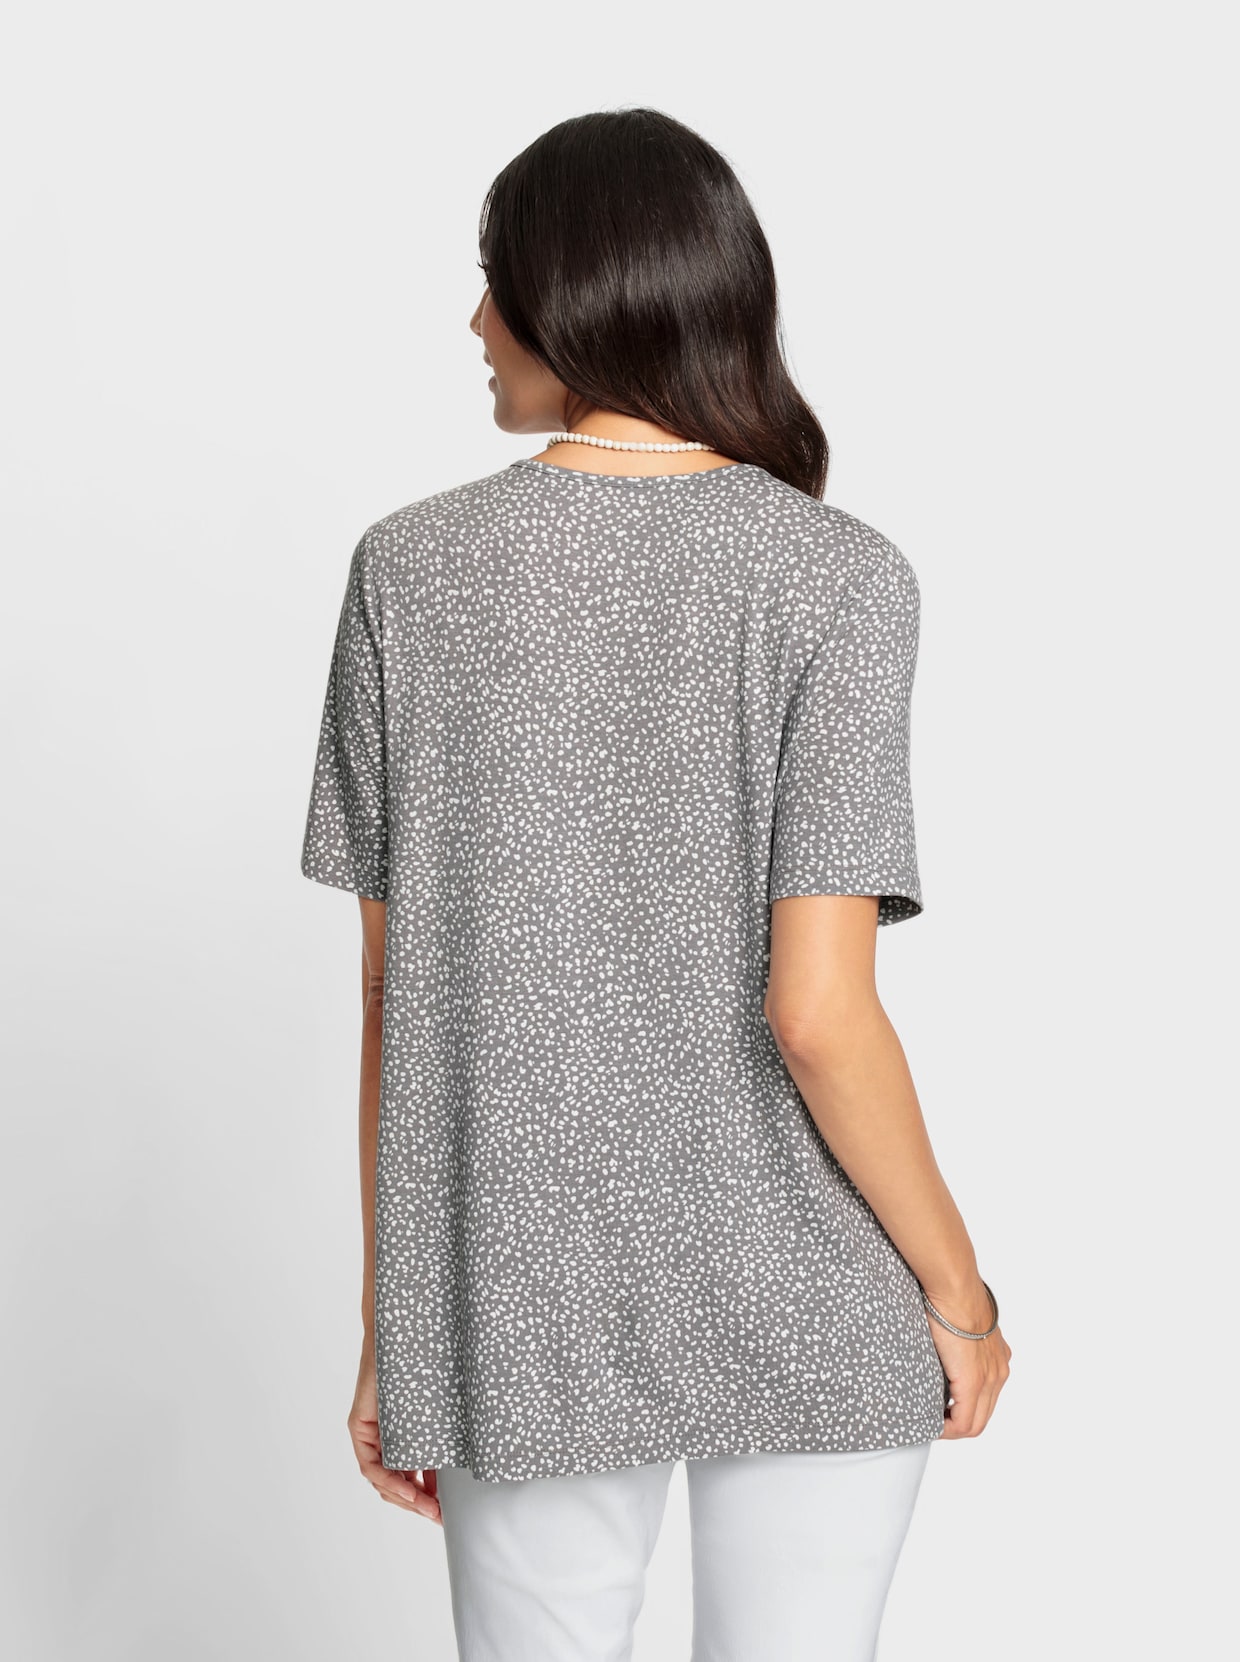 Tuniekshirt - zwart/wit geprint